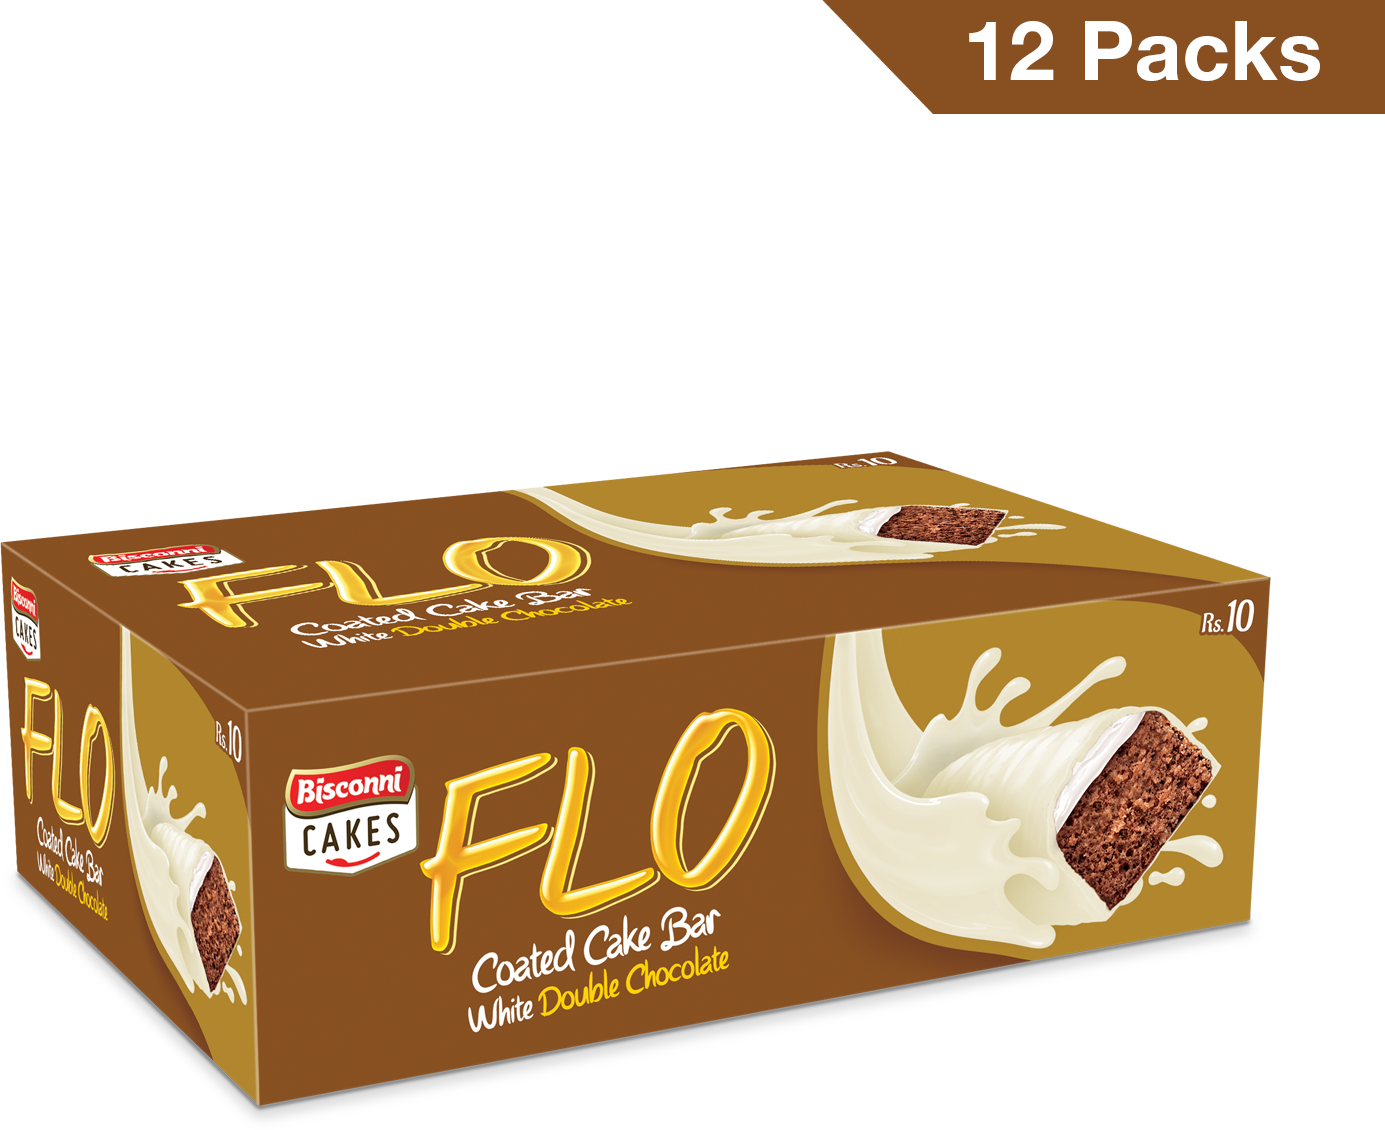 Flo White Enrobed Chocolate Cake (rs. 10 Packs)